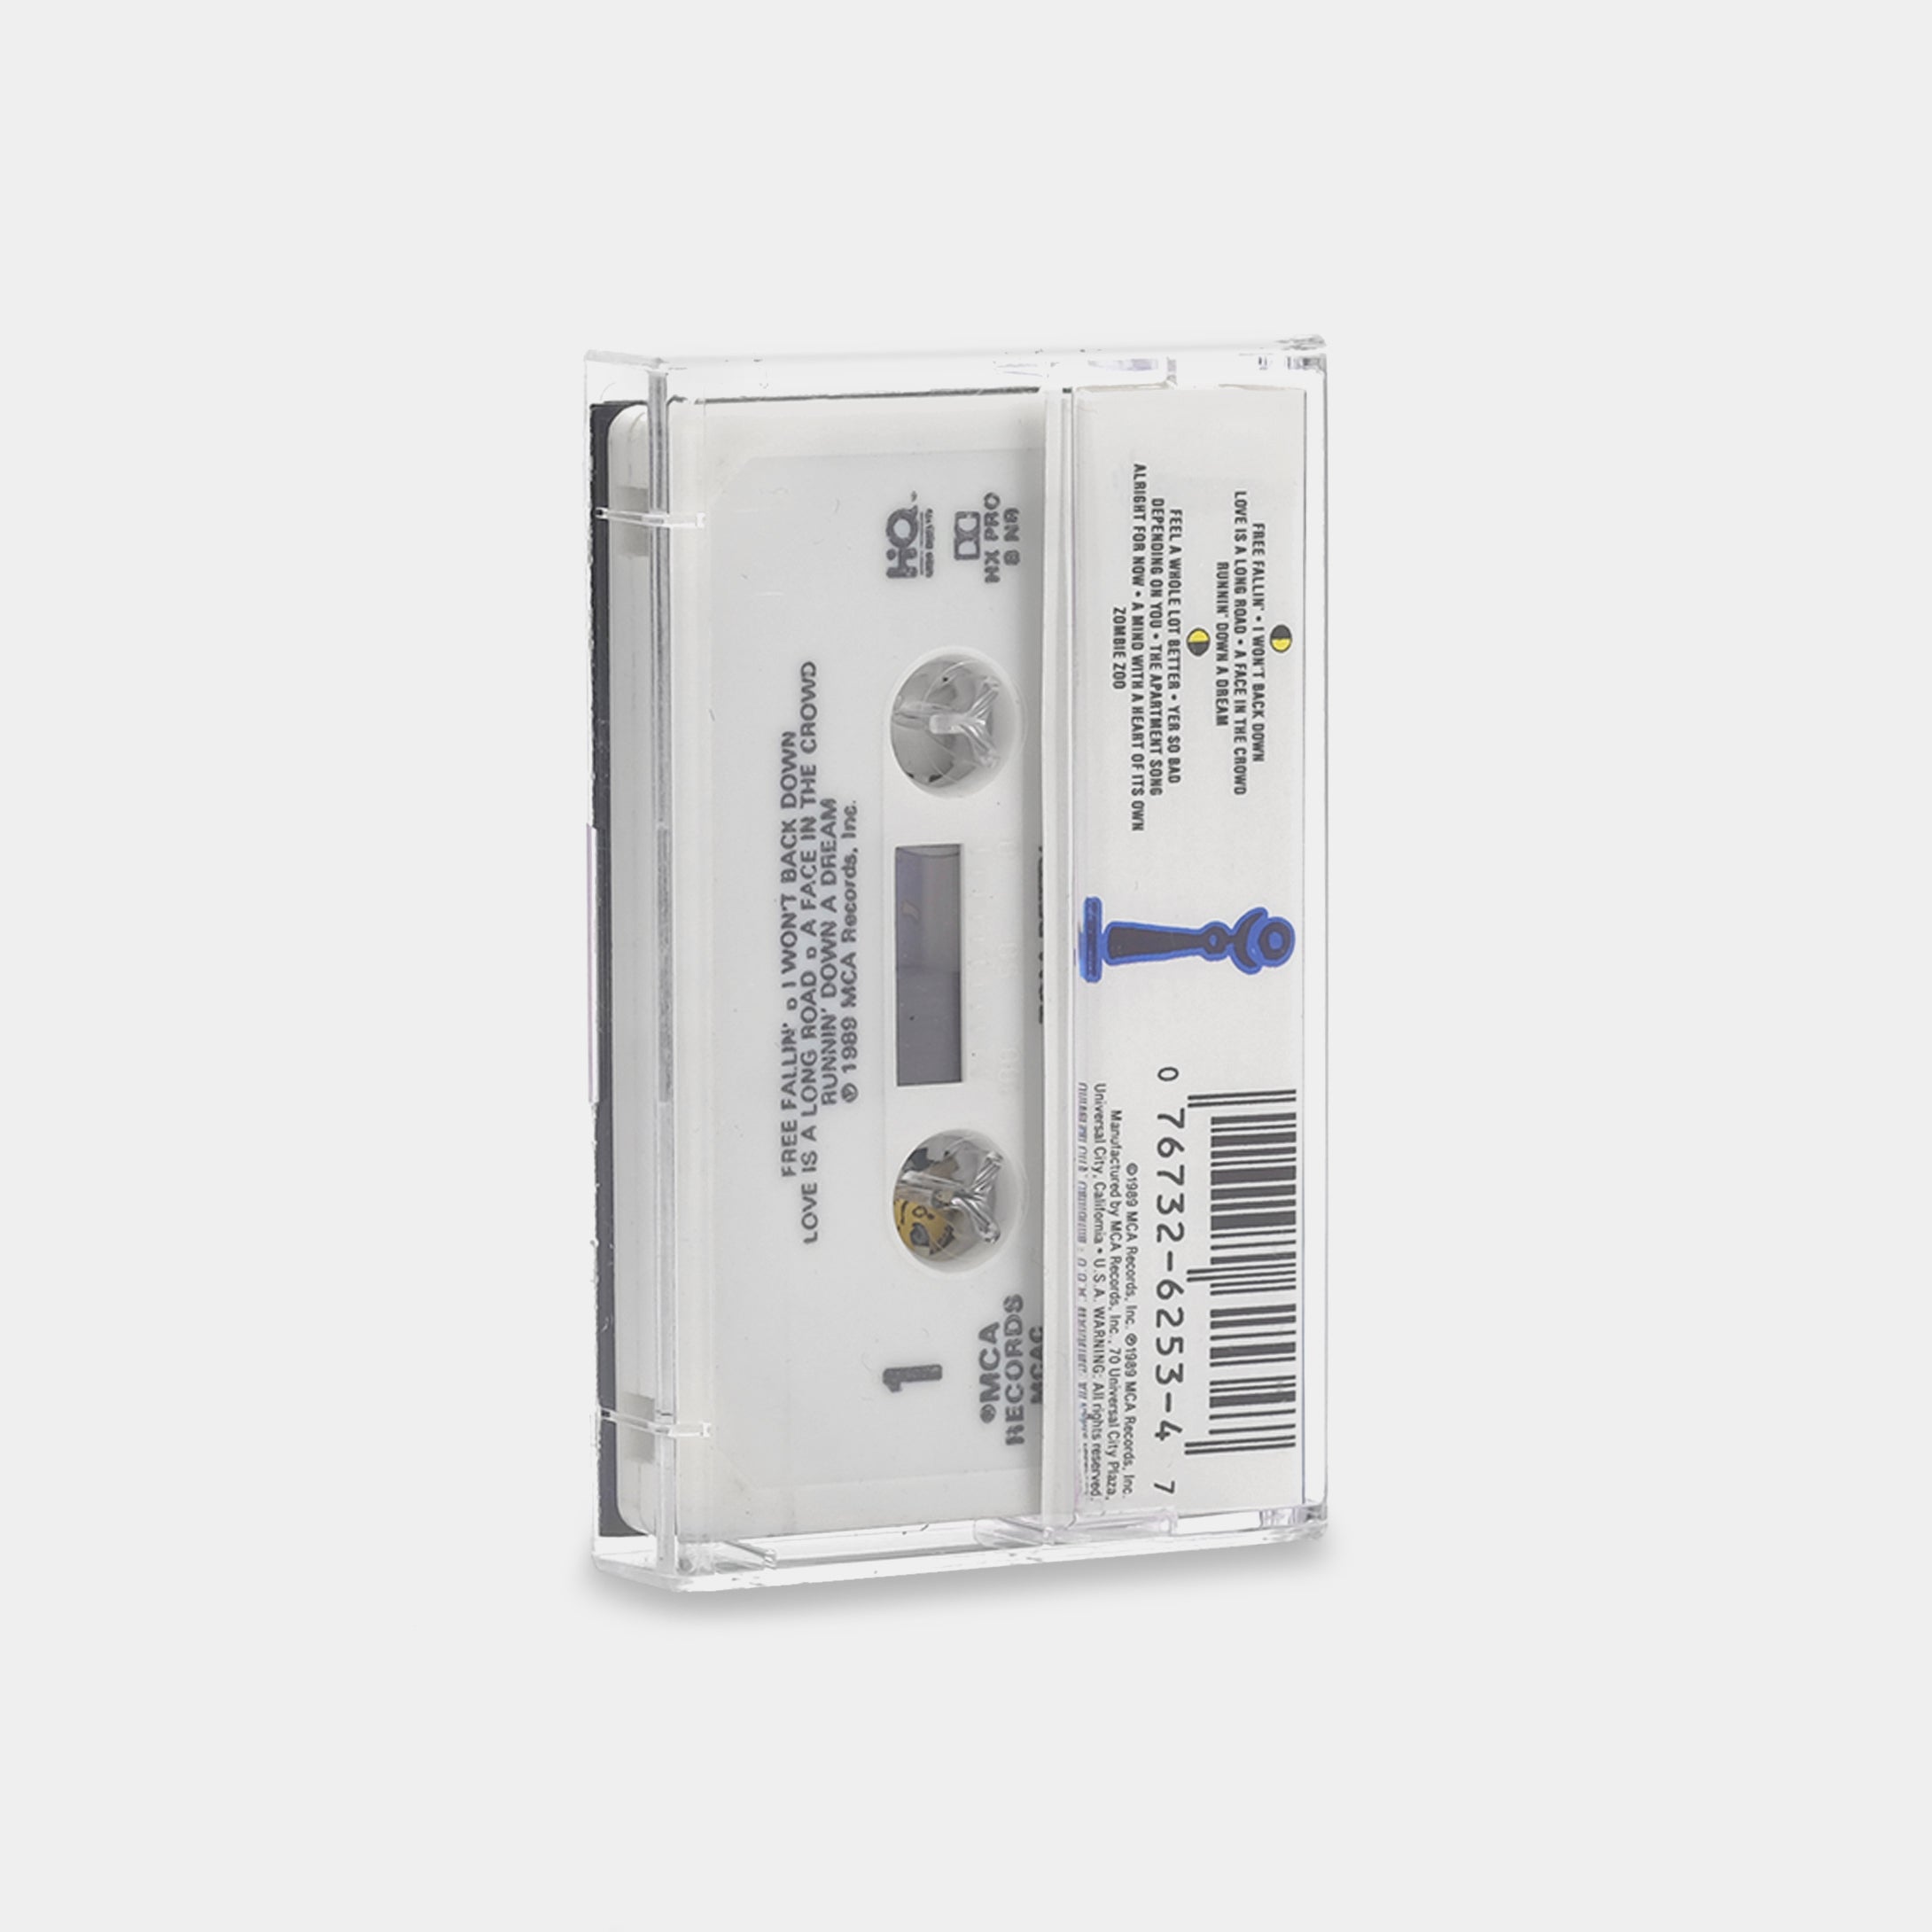 Tom Petty - Full Moon Fever Cassette Tape